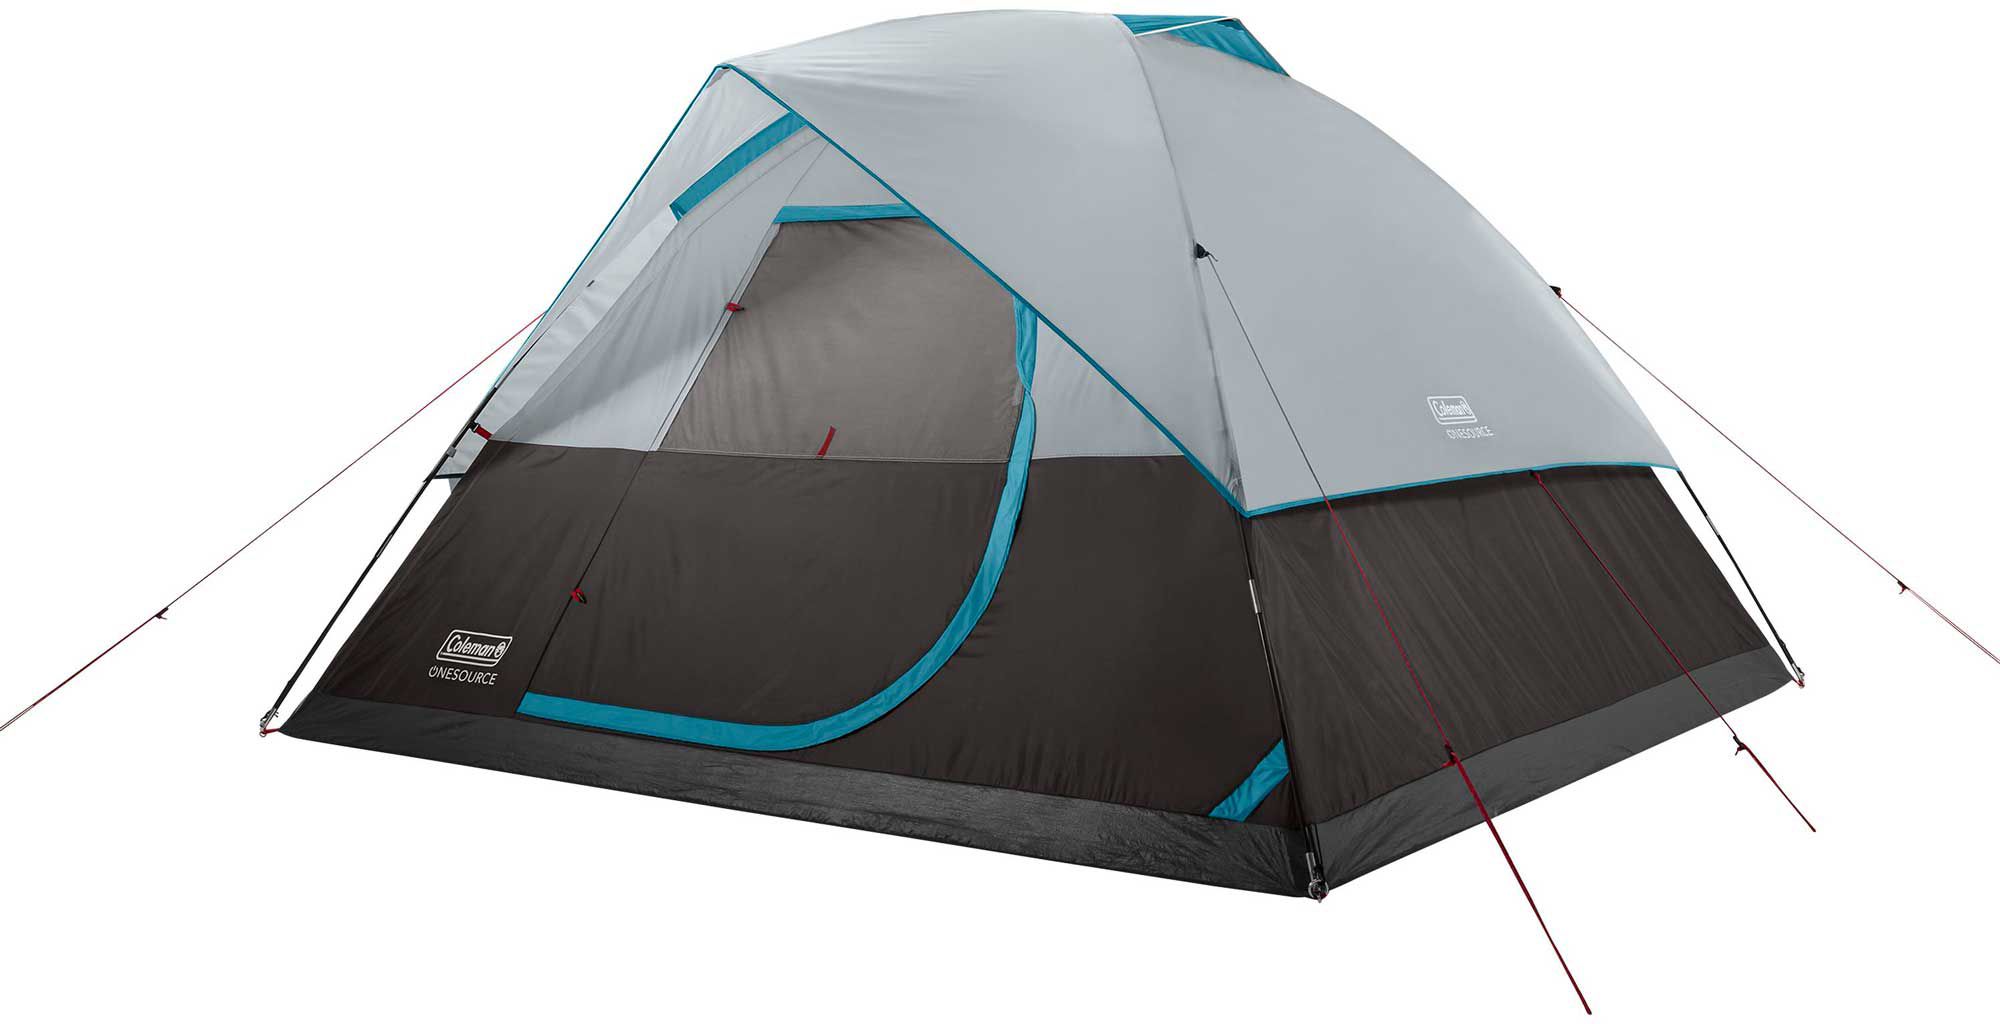 camping tent shop